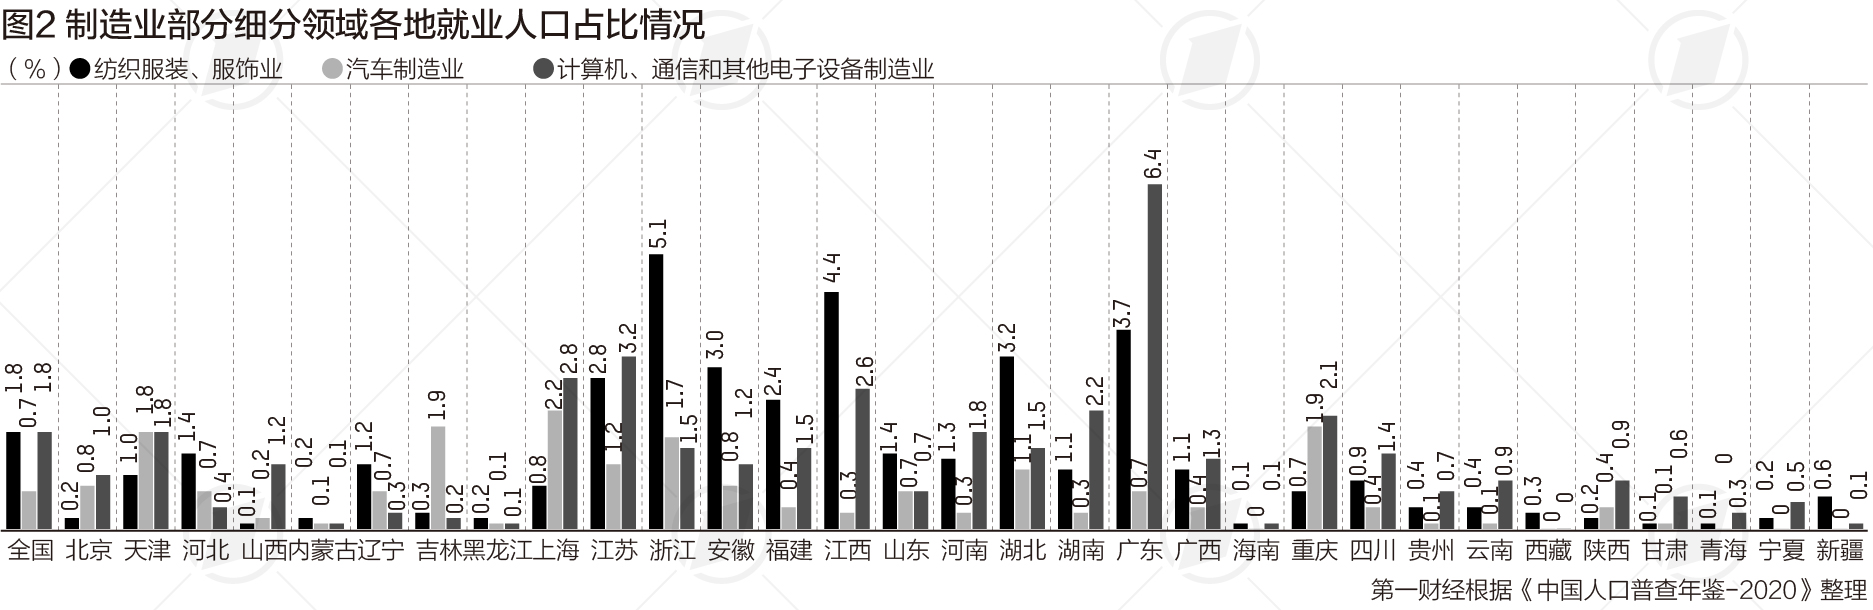 中国制造业就业人口占比近两成，浙江占比最高